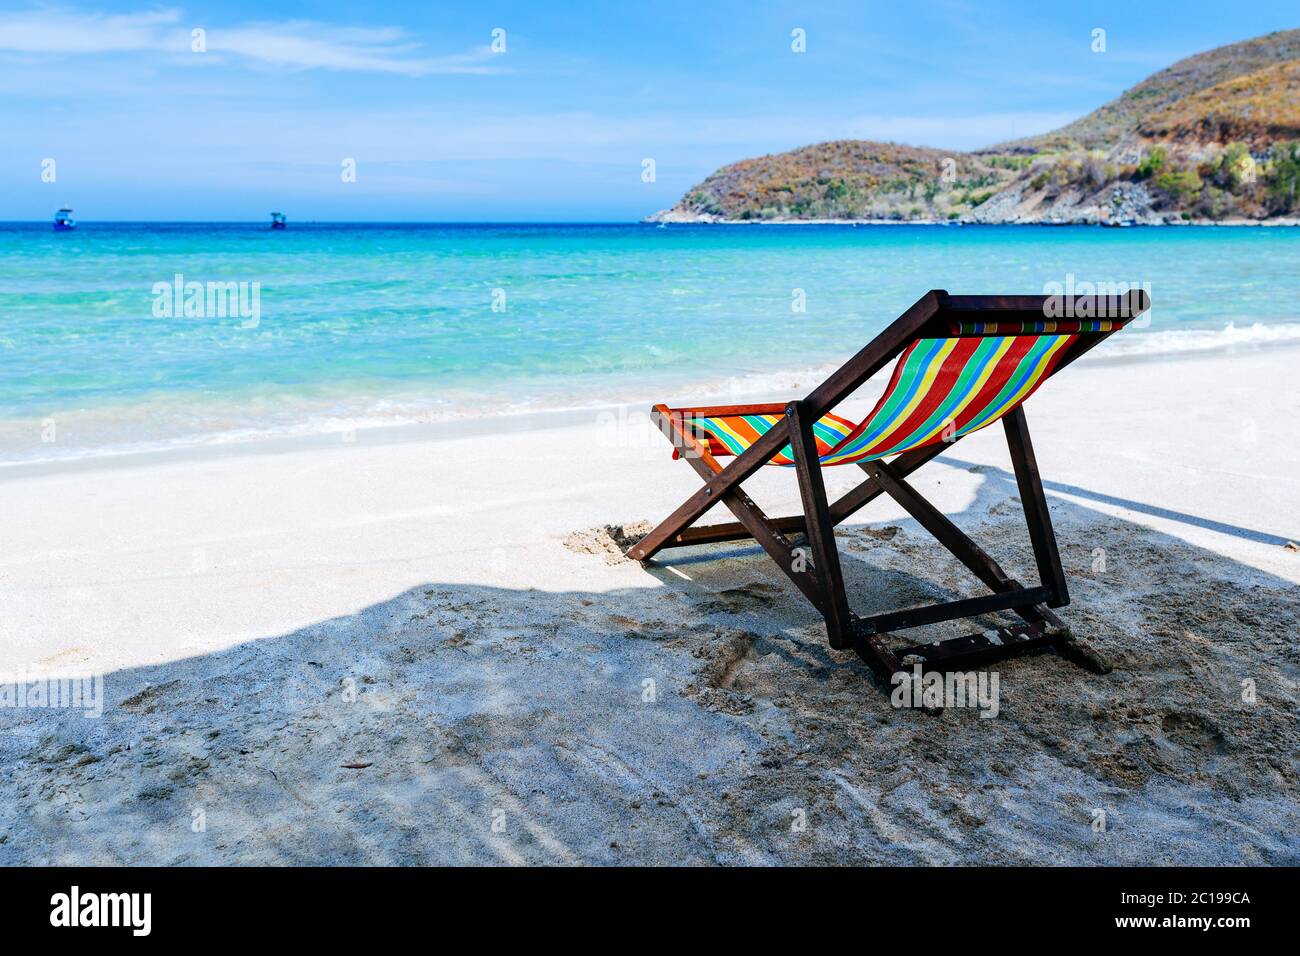 Una sedia a sdraio si trova all'ombra sulle rive di una spiaggia di sabbia sul mare. Il colore bruoso dell'acqua e del cielo blu con nuvole rotte nella b Foto Stock